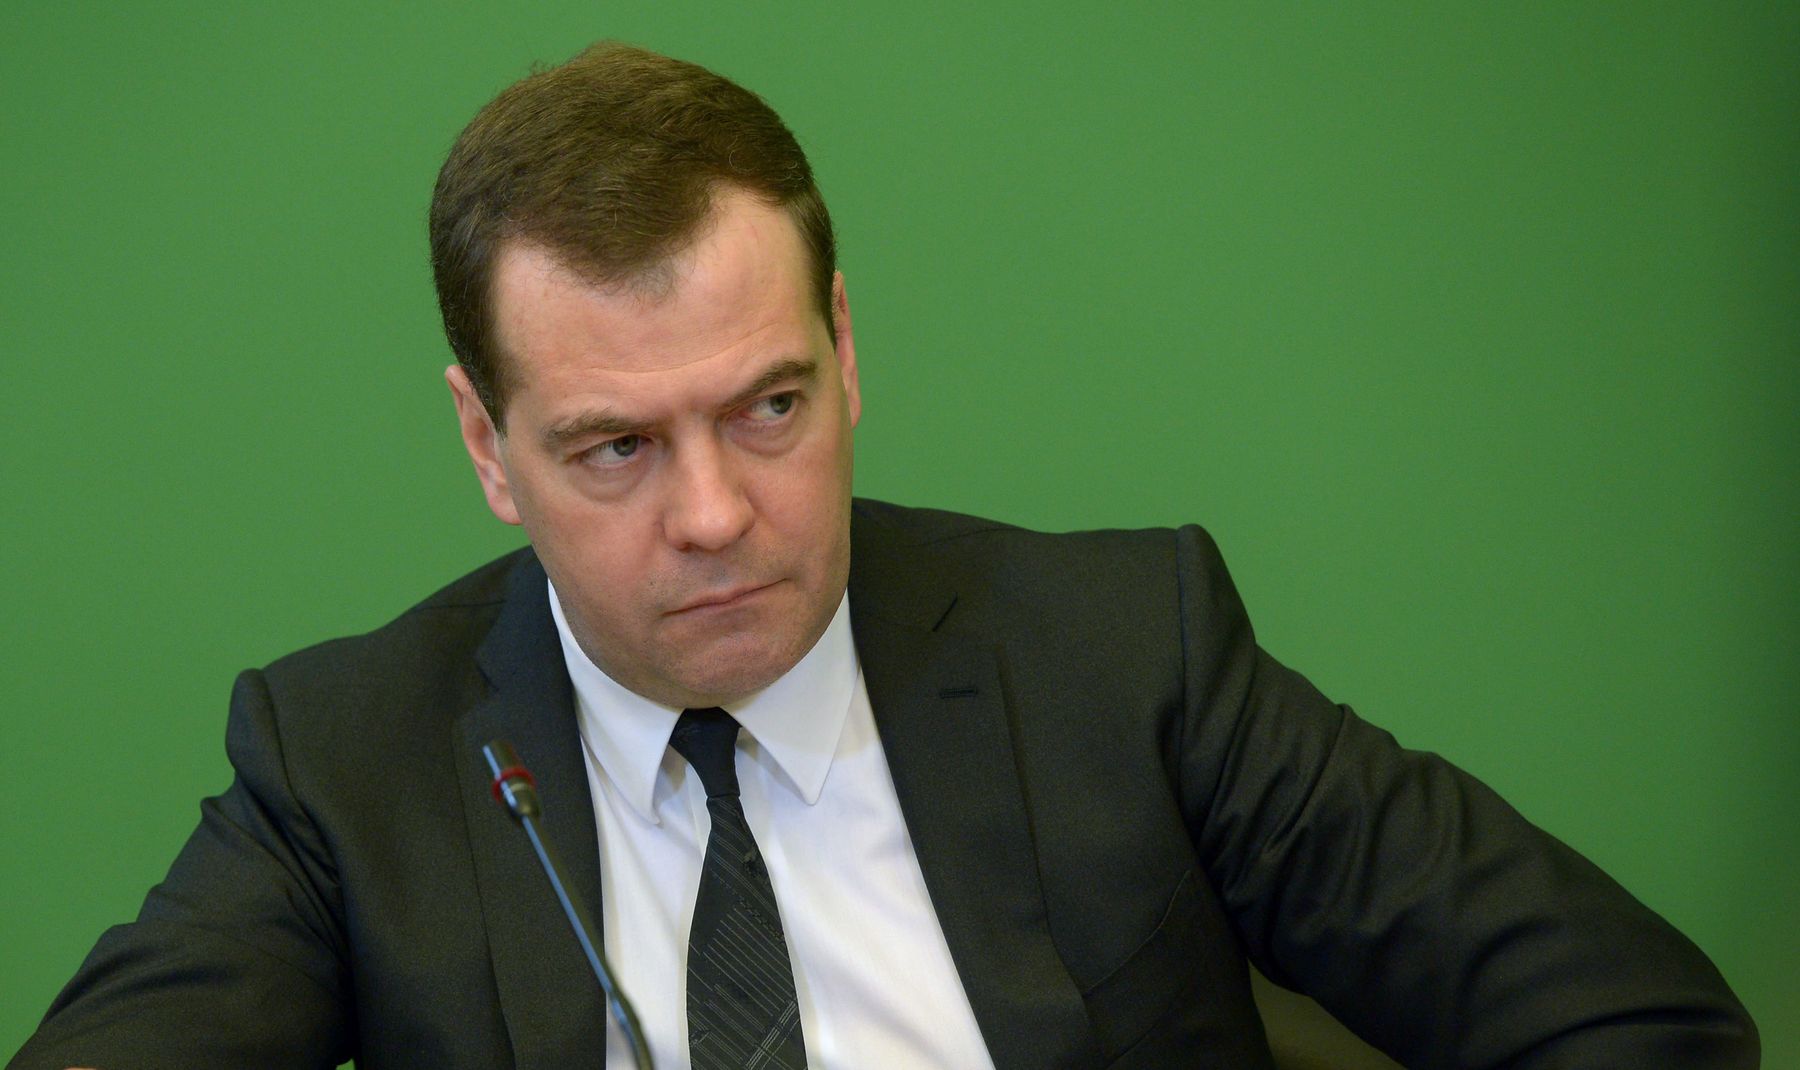 Медведев: заявления из Киева противоречивы, действий пока не видим